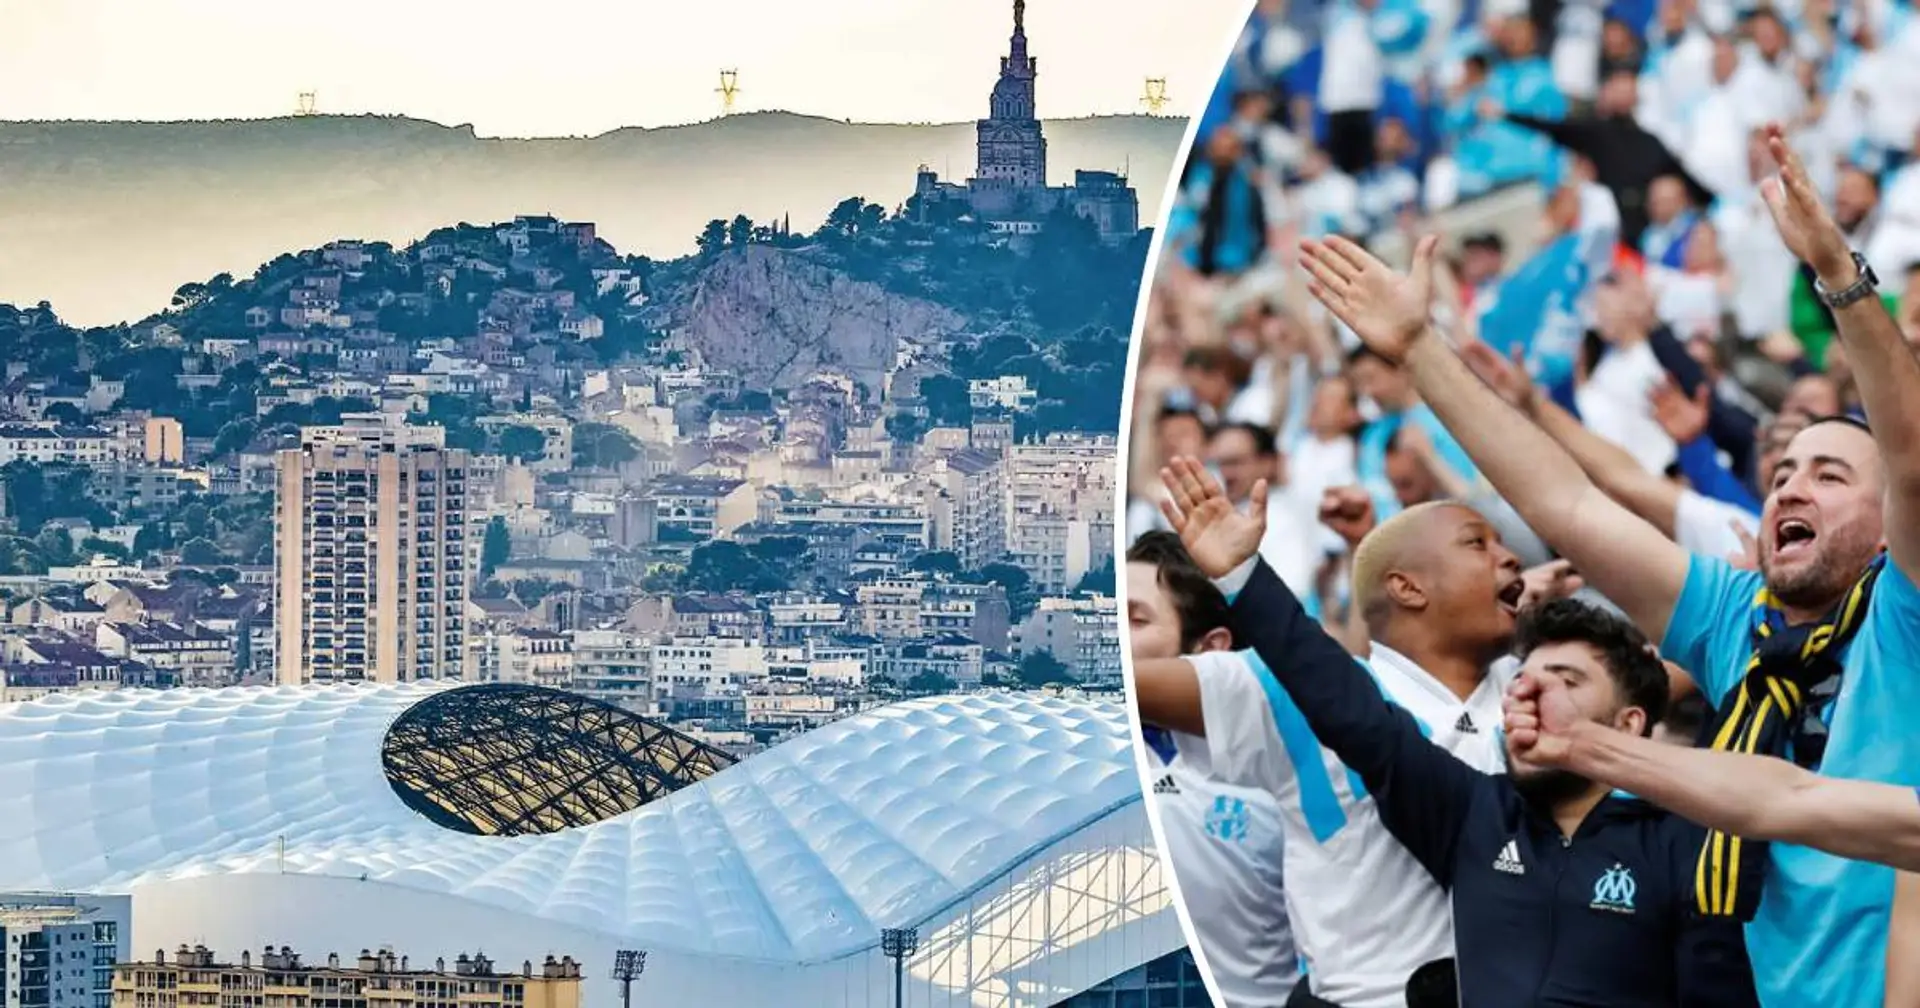 "Un club spécial qui nécessite une implication total de tous les jours" un fan explique ce qu'est l'Olympique de Marseille